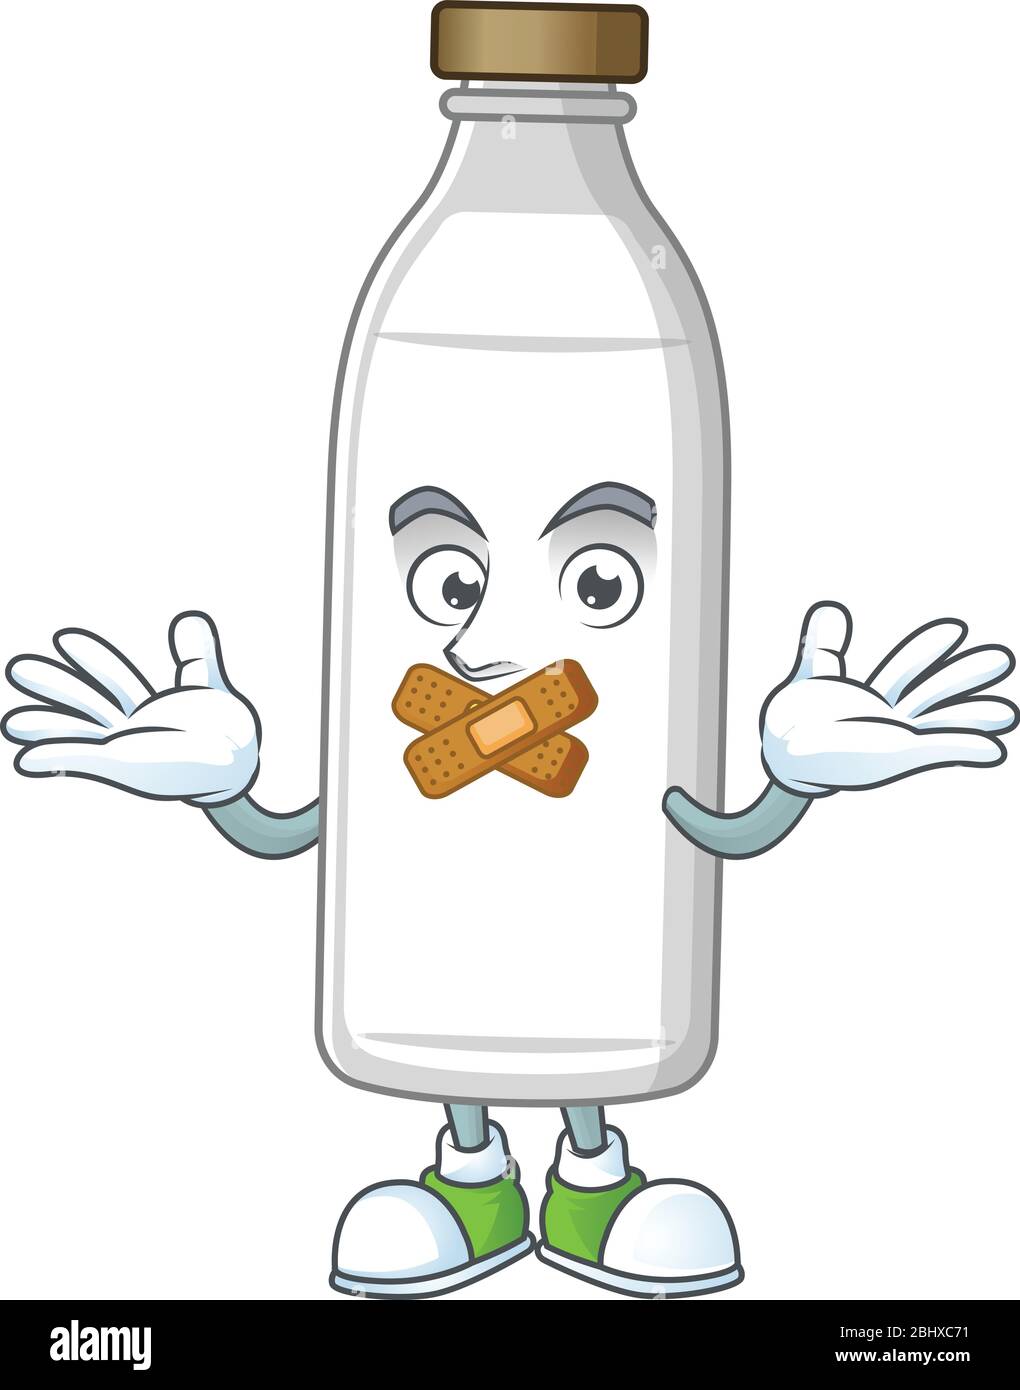 Milk bottle mascot cartoon design with quiet finger gesture Stock Vector  Image & Art - Alamy